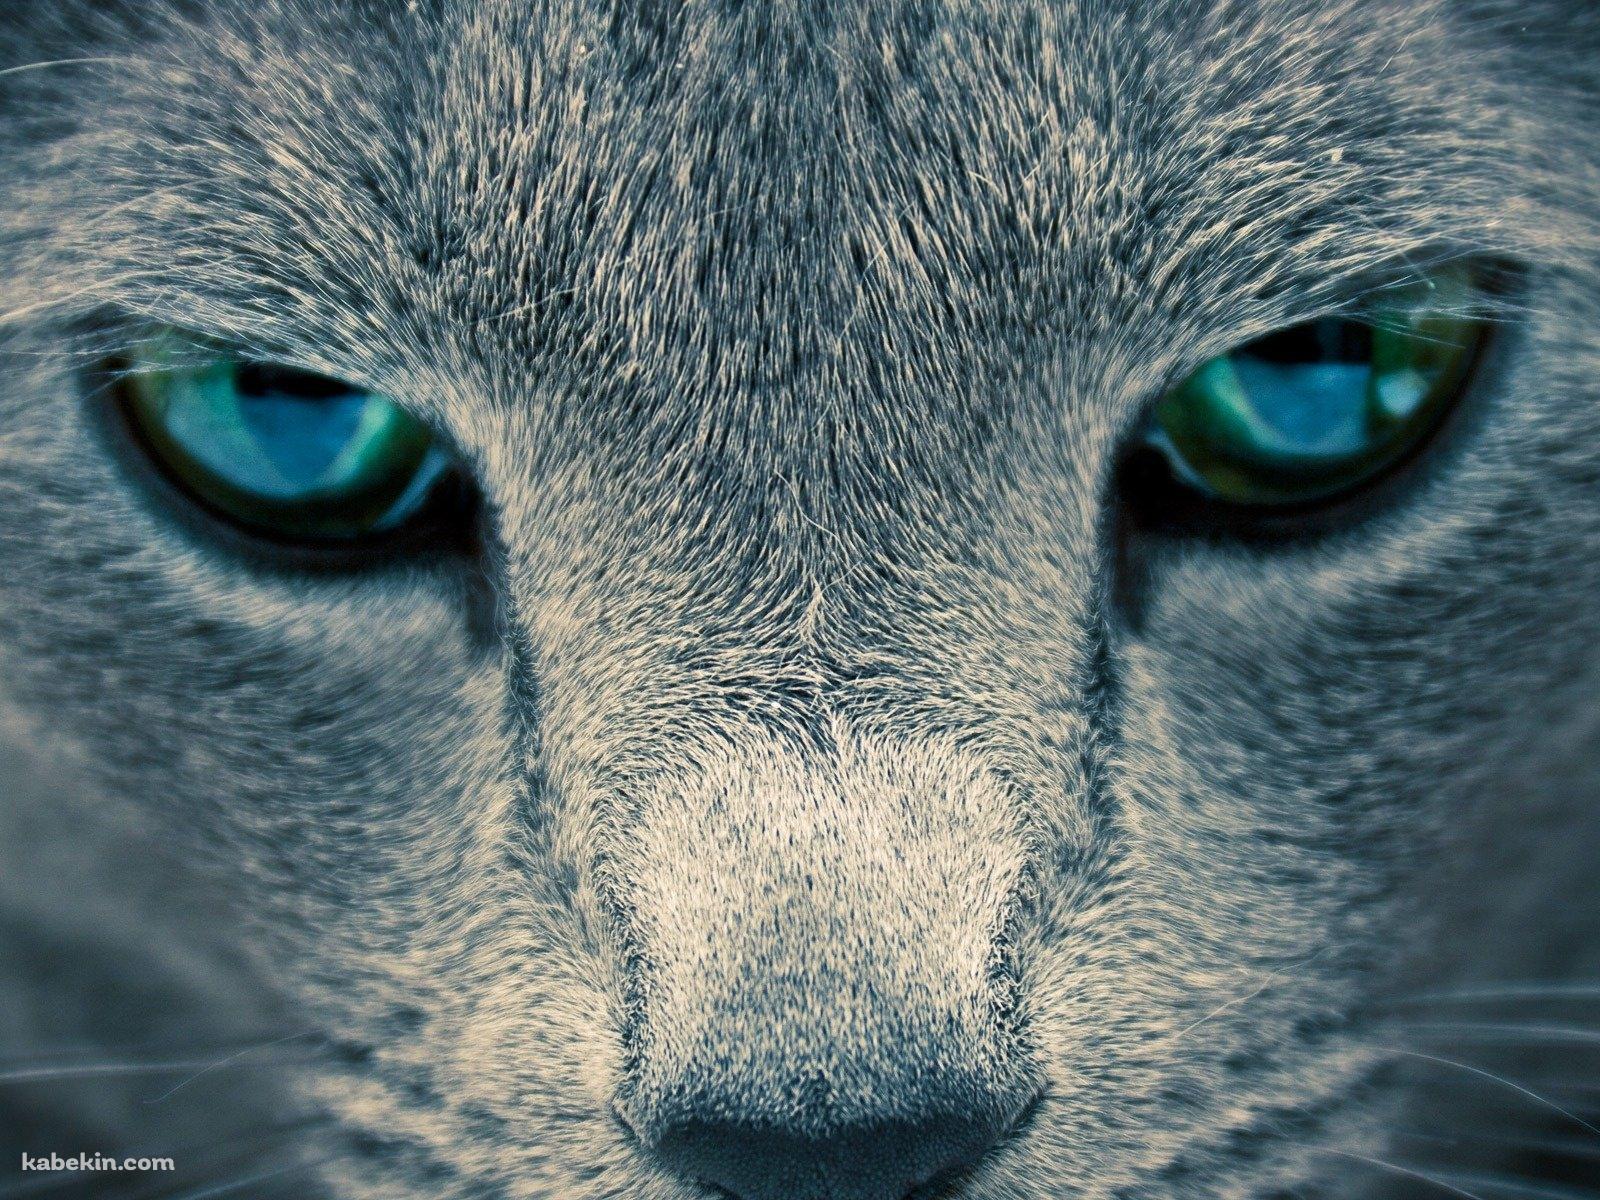 凄みのある青い目の猫の壁紙(1600px x 1200px) 高画質 PC・デスクトップ用